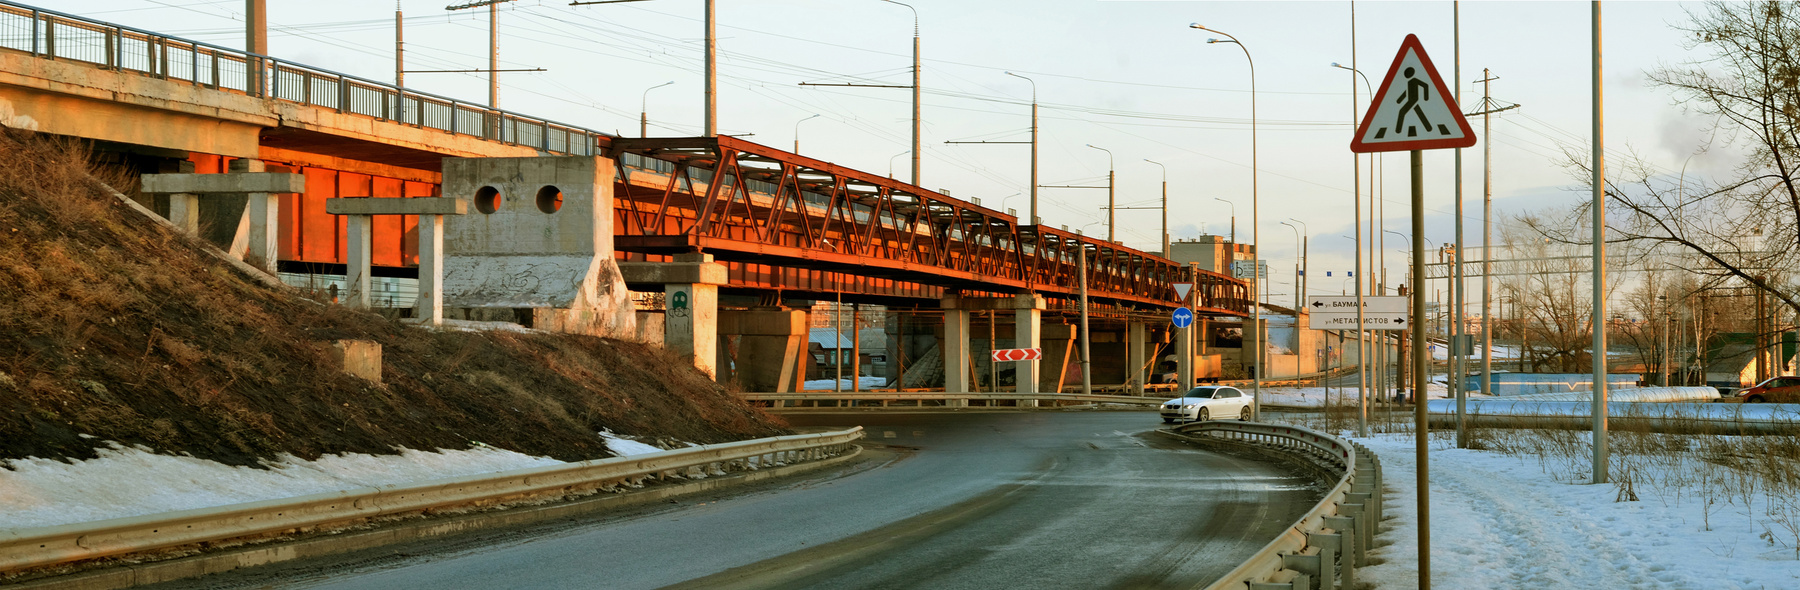 Мост в Терновку. Пенза 